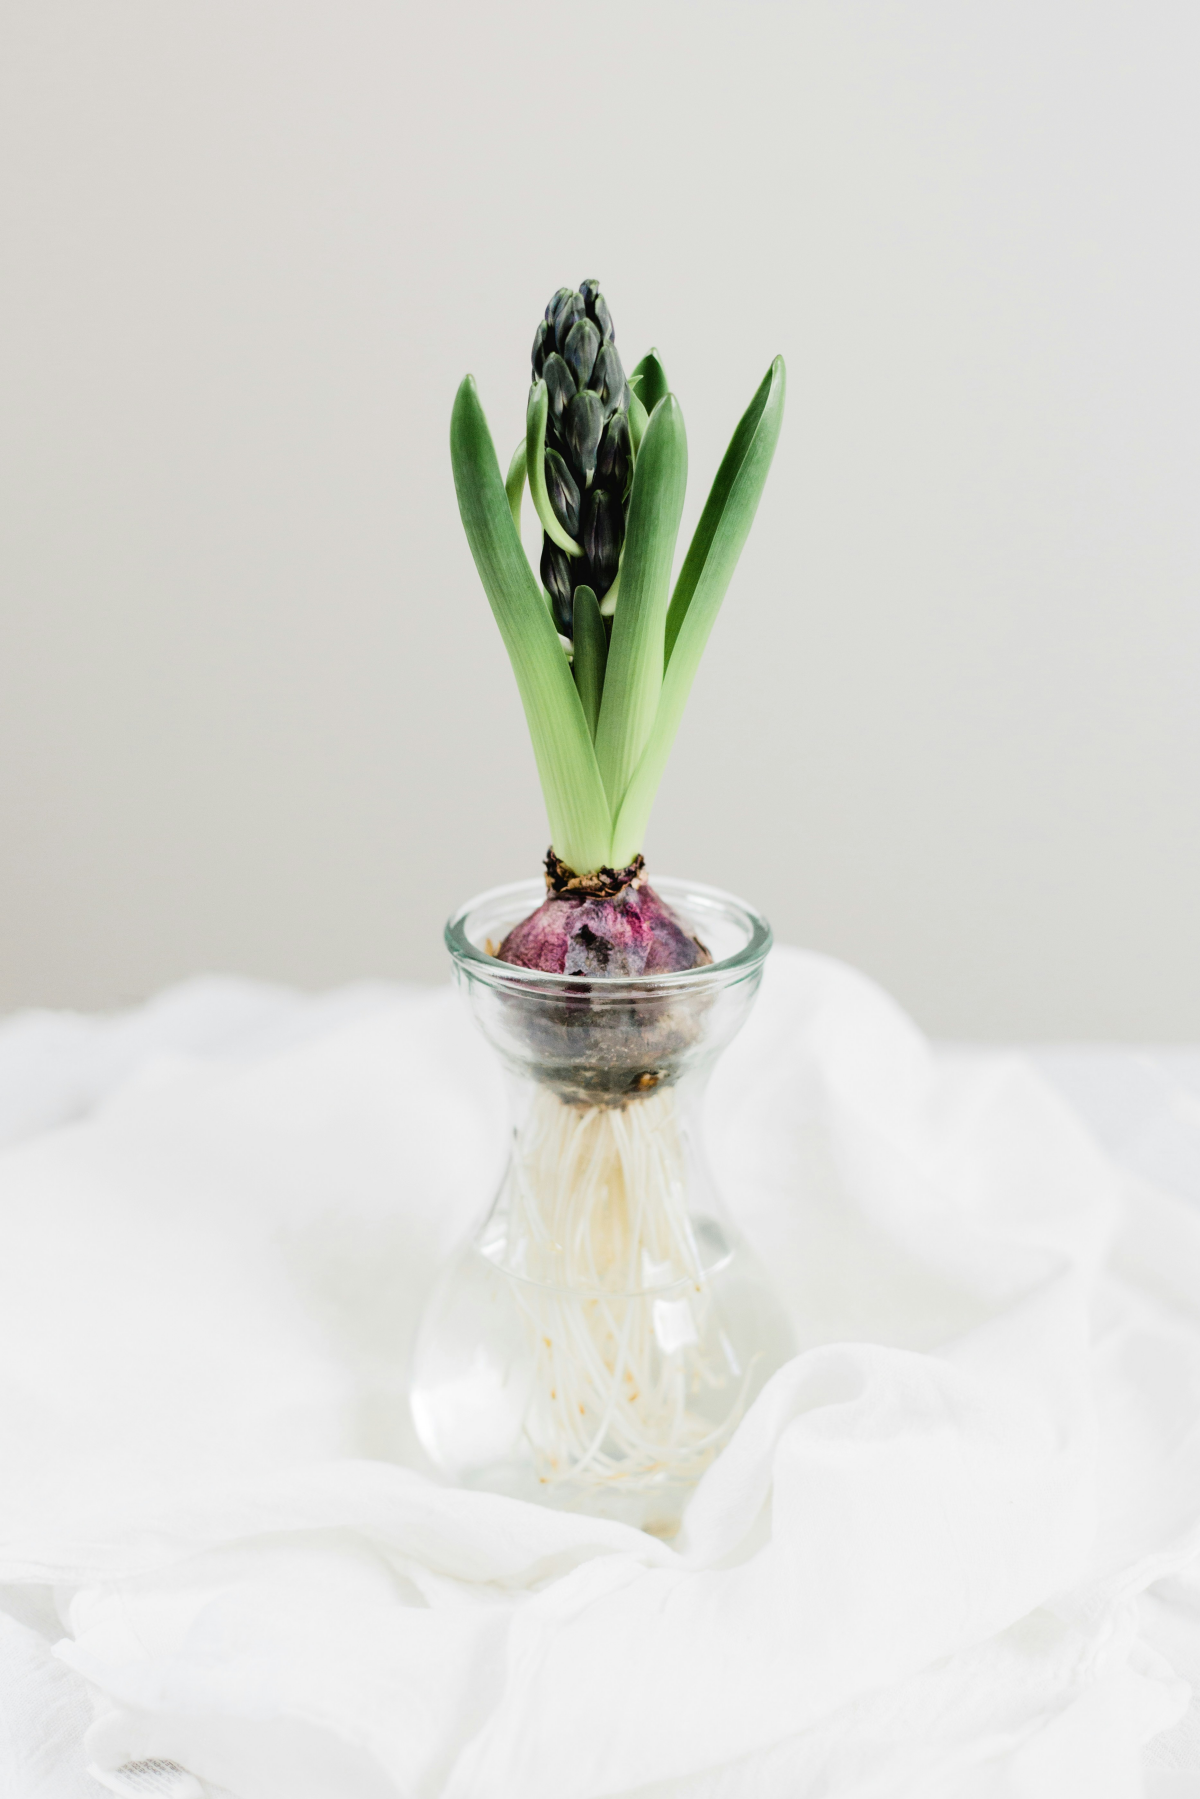 hyacinth bulbs bulb in a vase